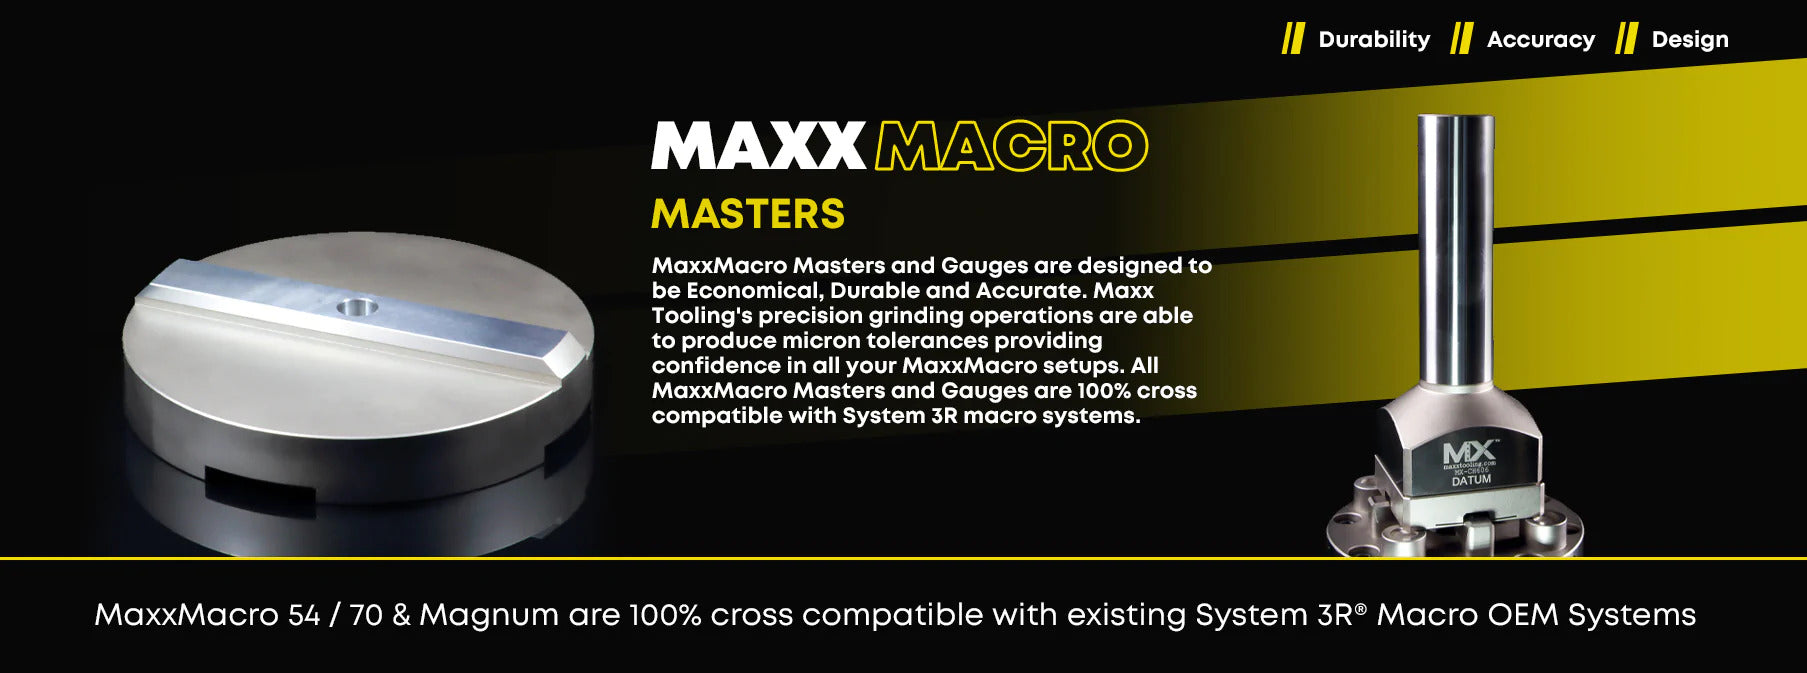 MaxxMacro Master